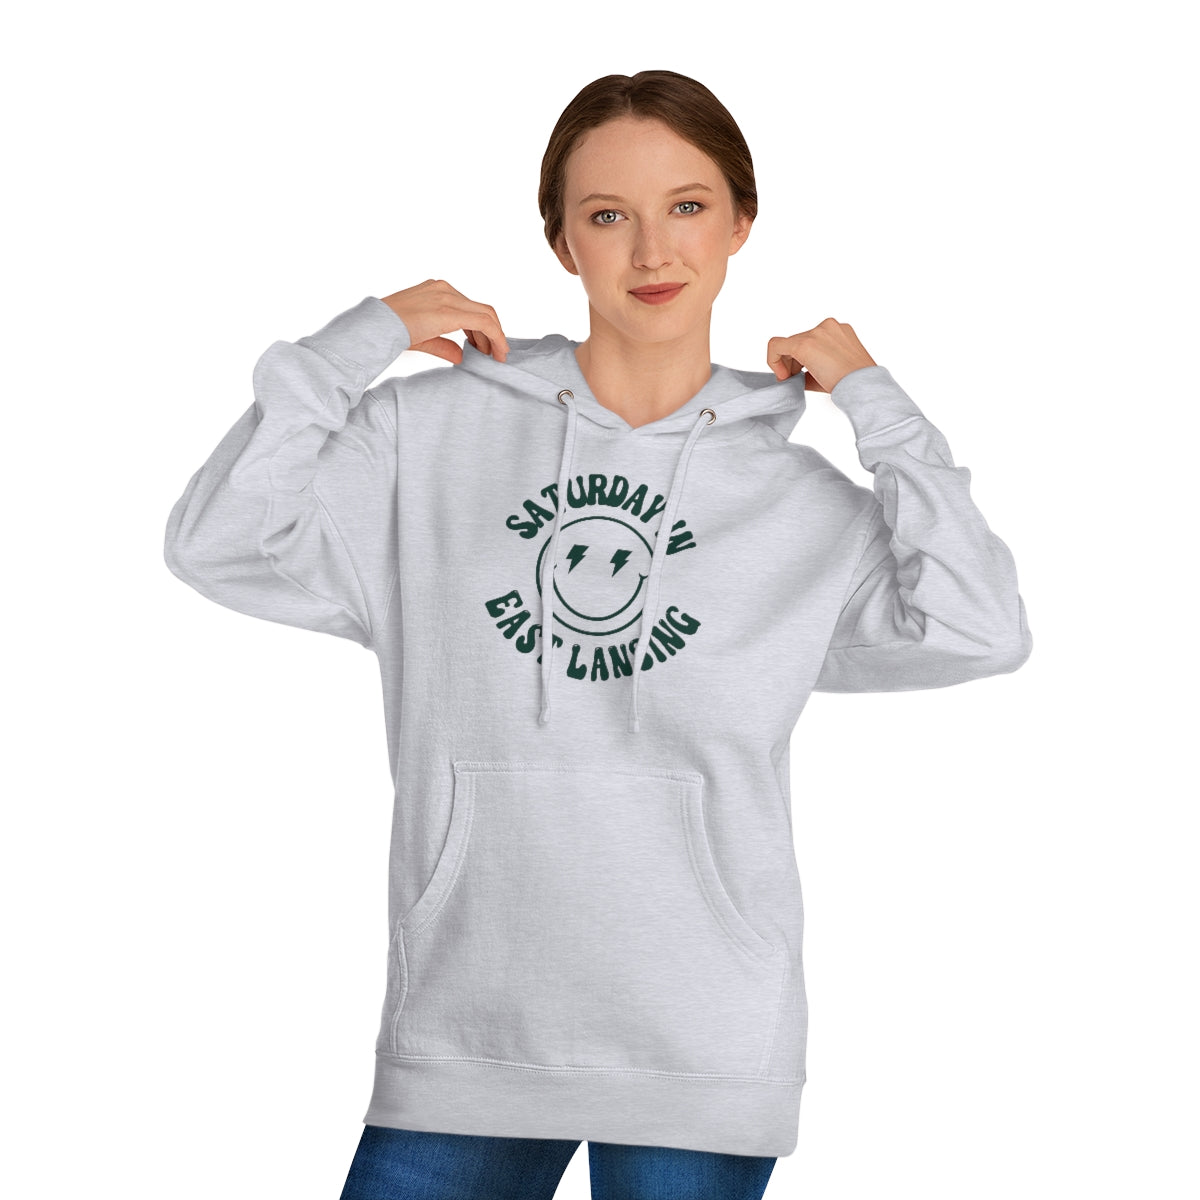 Smiley East Lansing Hooded Sweatshirt - GG - ITC